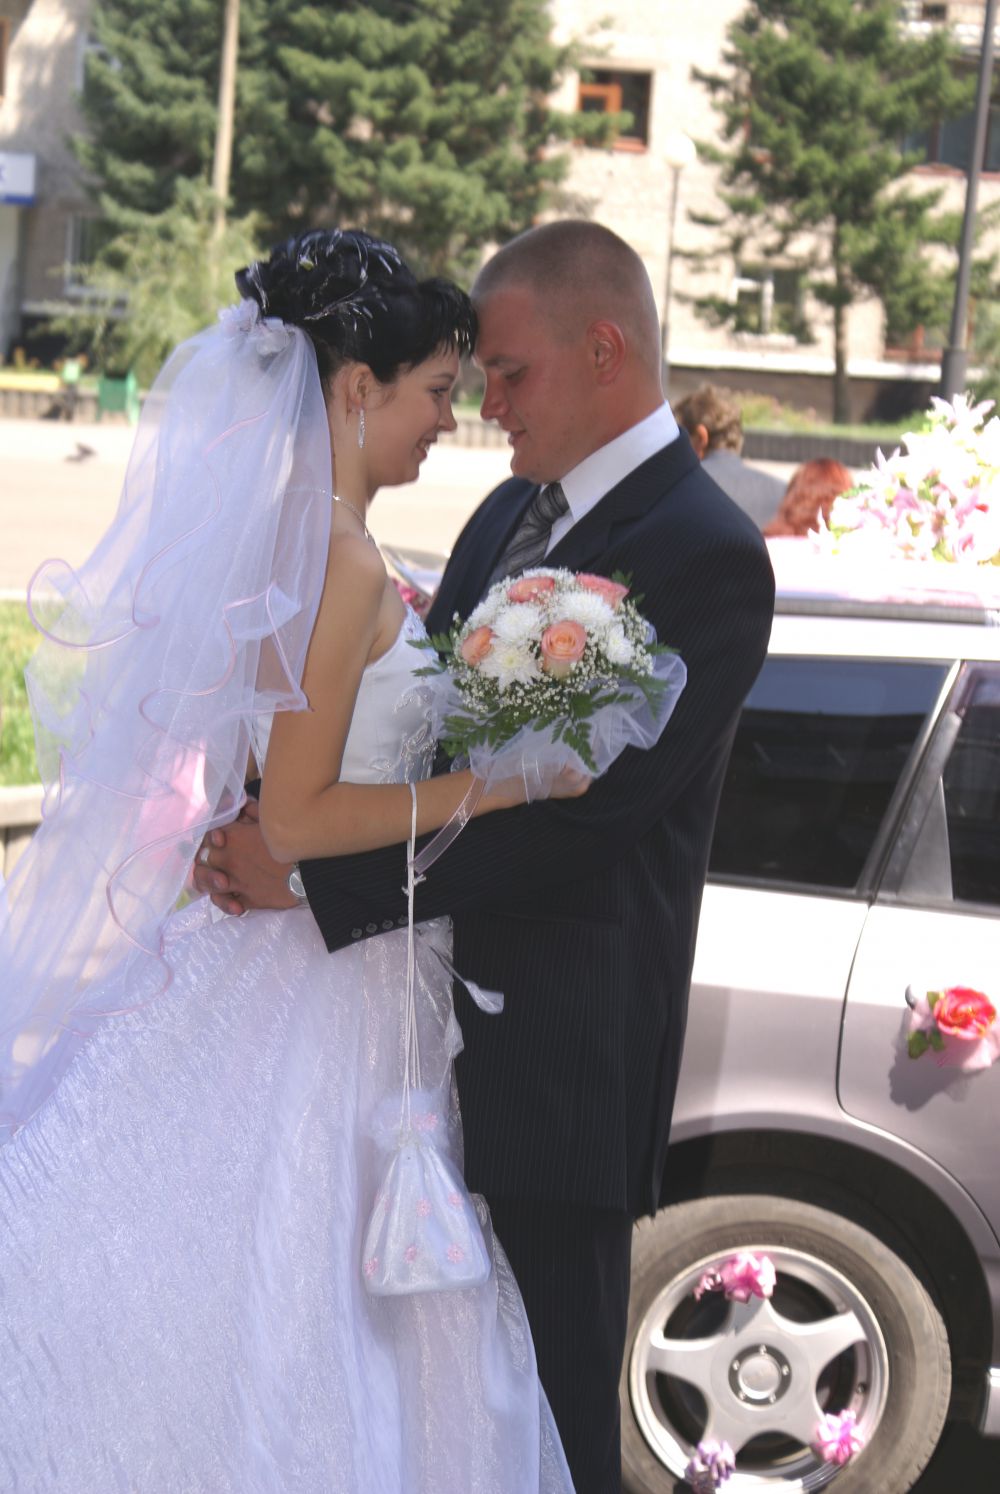 Пара №12. Александр и Наталья Косиловы, в браке 7 лет. Фото сделано в 2006 году.